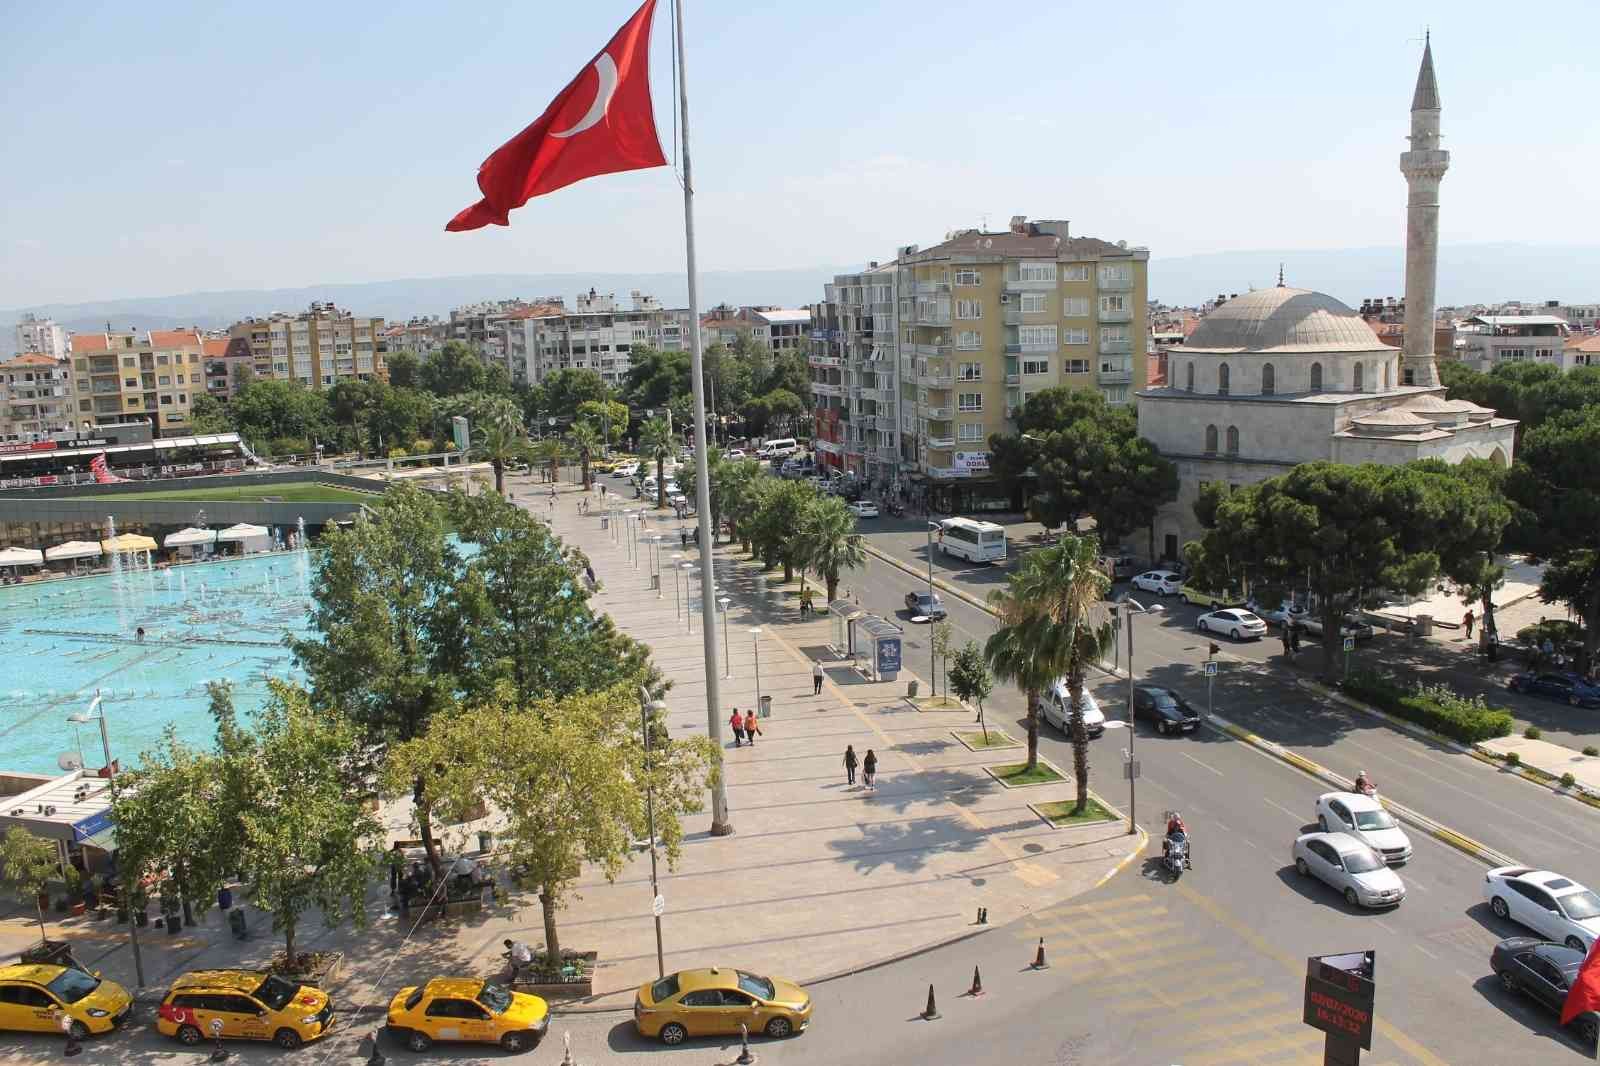 Aydın’da 40 bin 363 engelli vatandaş yaşıyor #aydin